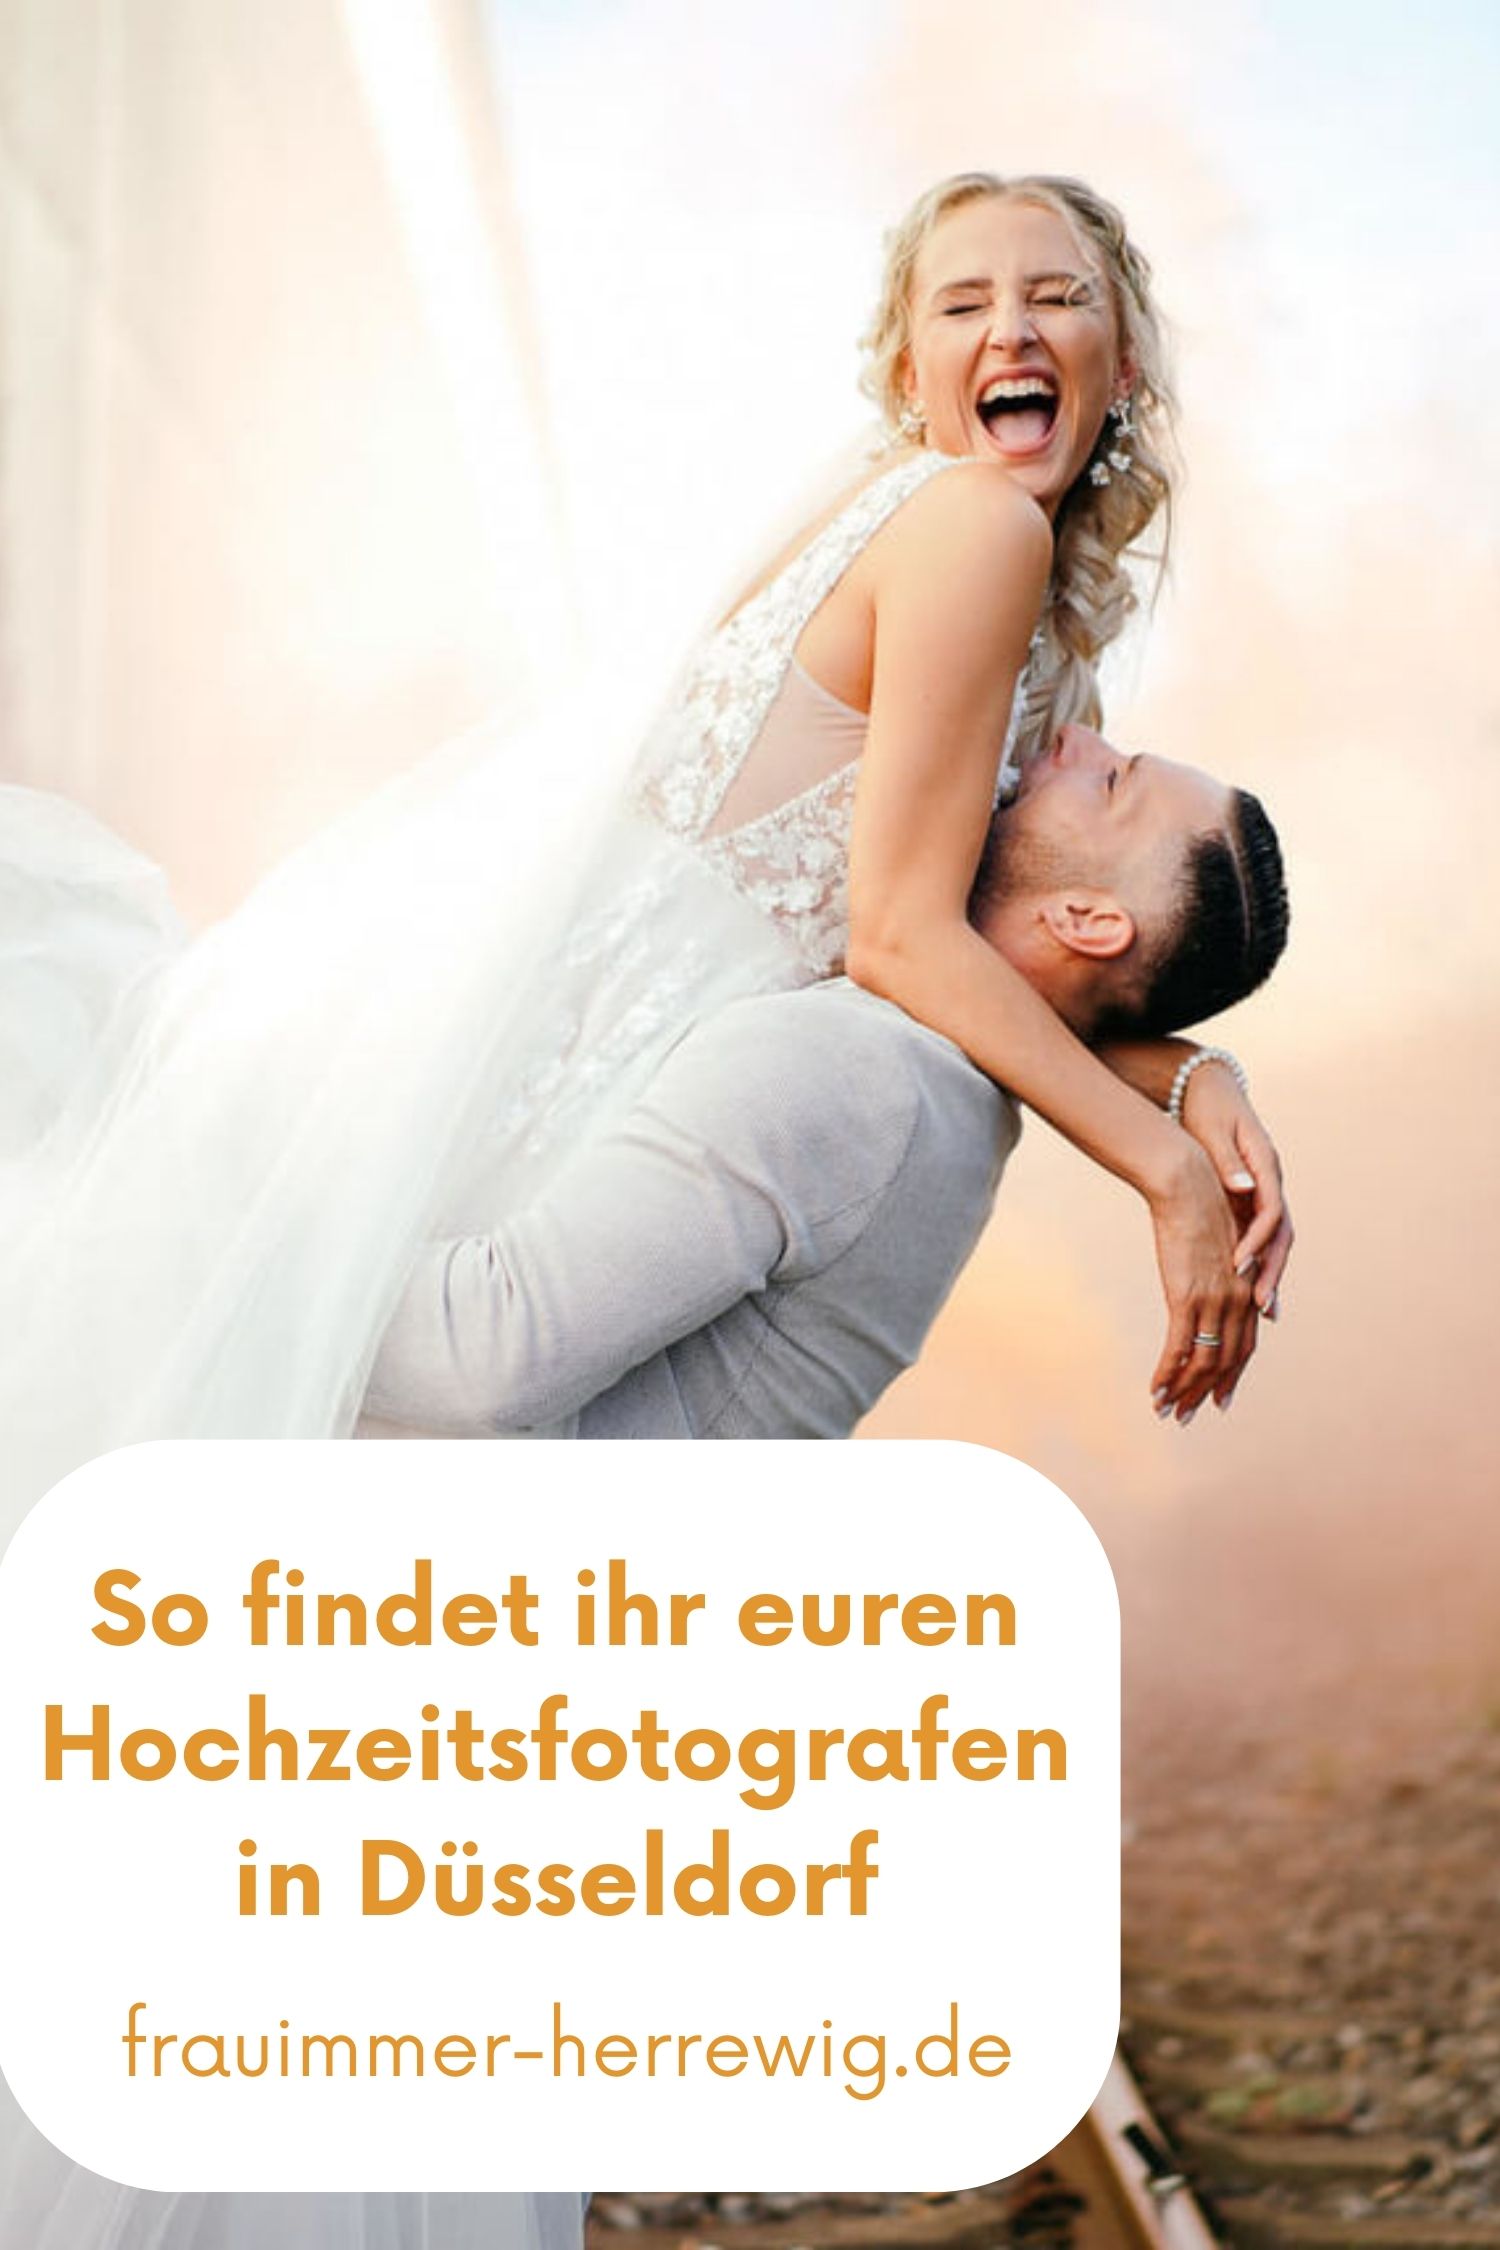 Hochzeitsfotograf in duesseldorf finden – gesehen bei frauimmer-herrewig.de